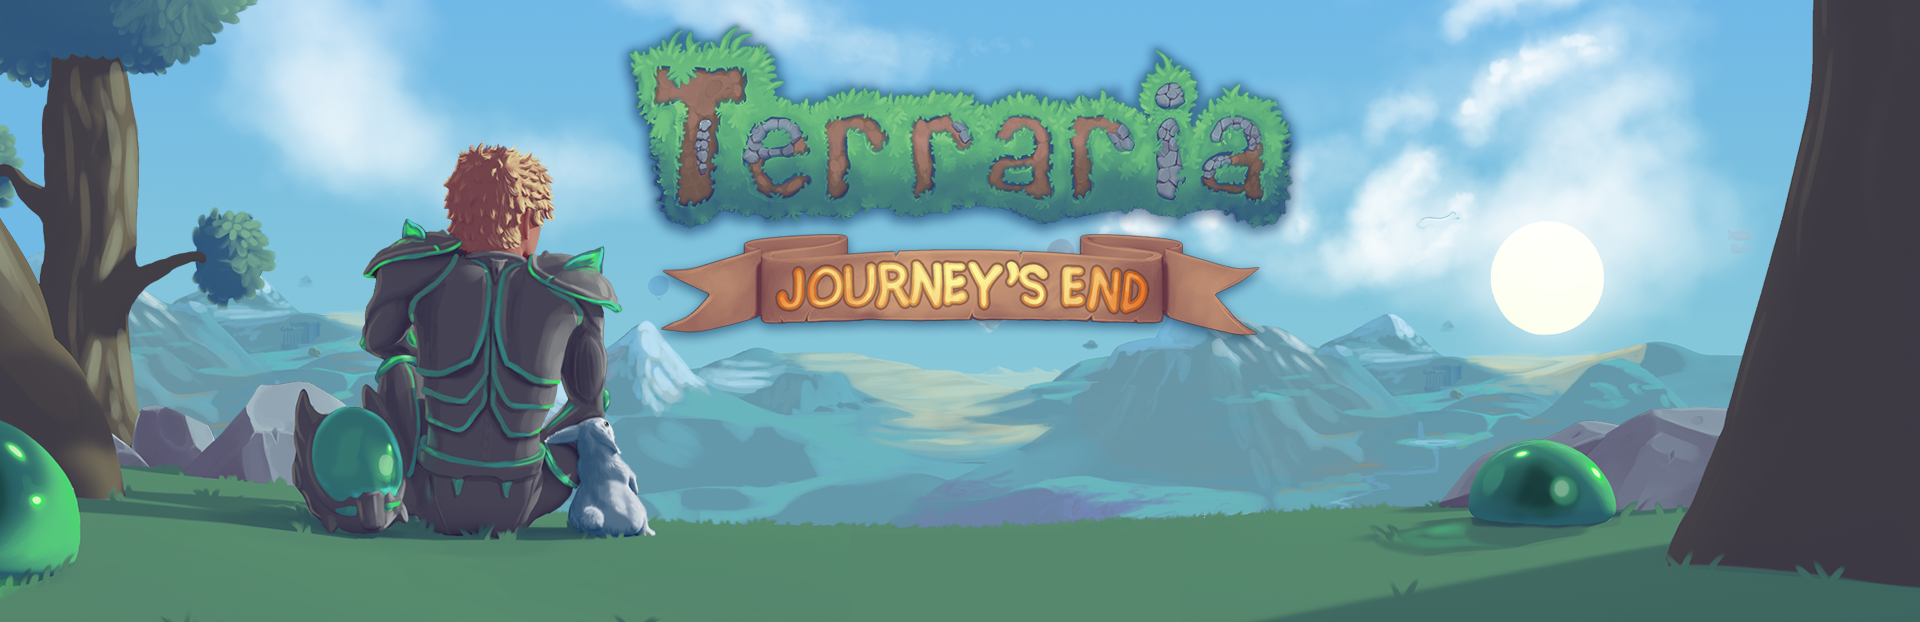 Terraria - Terraria Wins the 2021 Labor of Love Steam Award! - Steam News